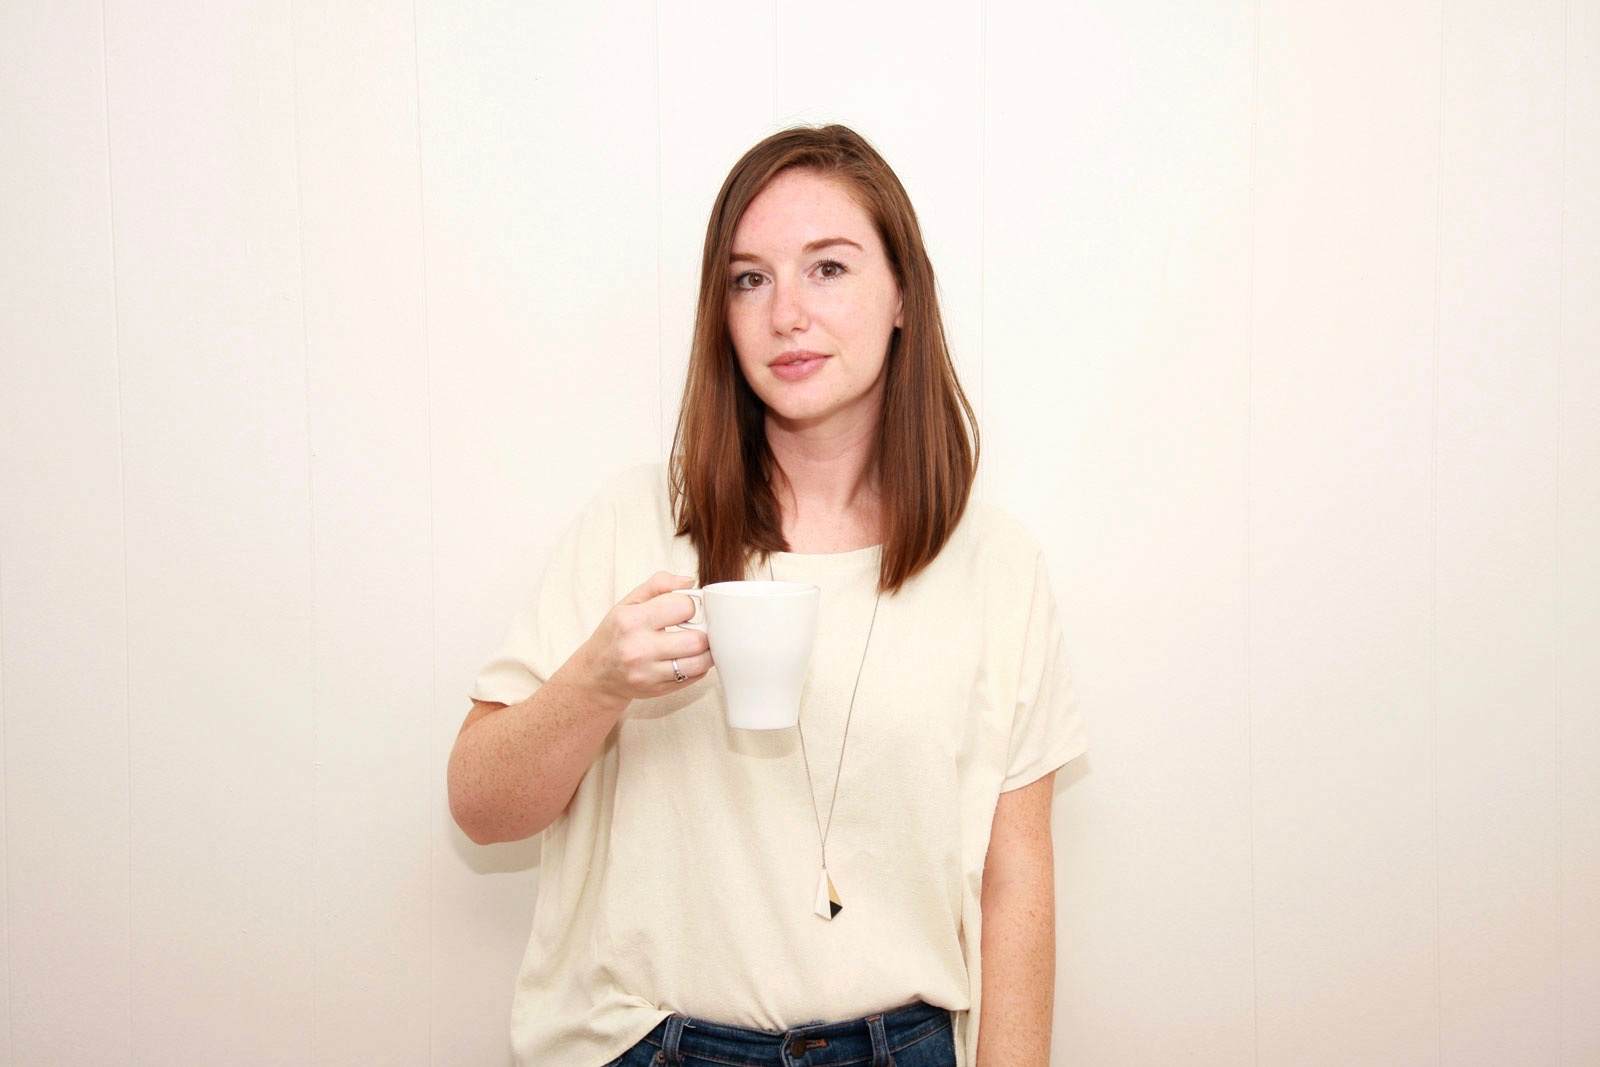 Alyssa holds a mug of coffee